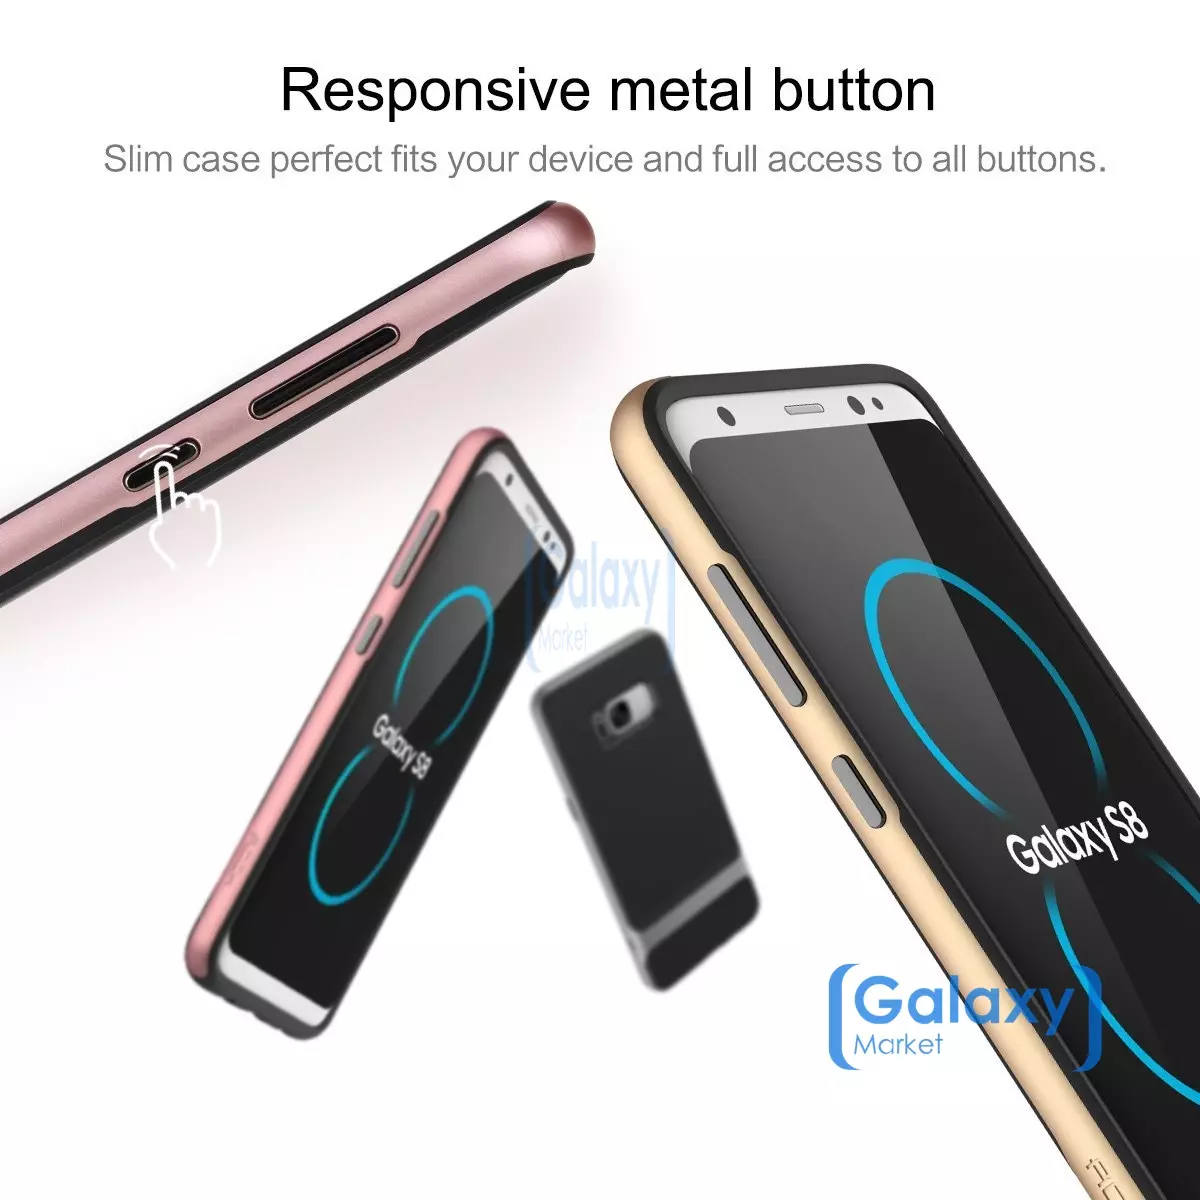 Чехол бампер Rock Royce Case для Samsung Galaxy S8 Grey (Серый)